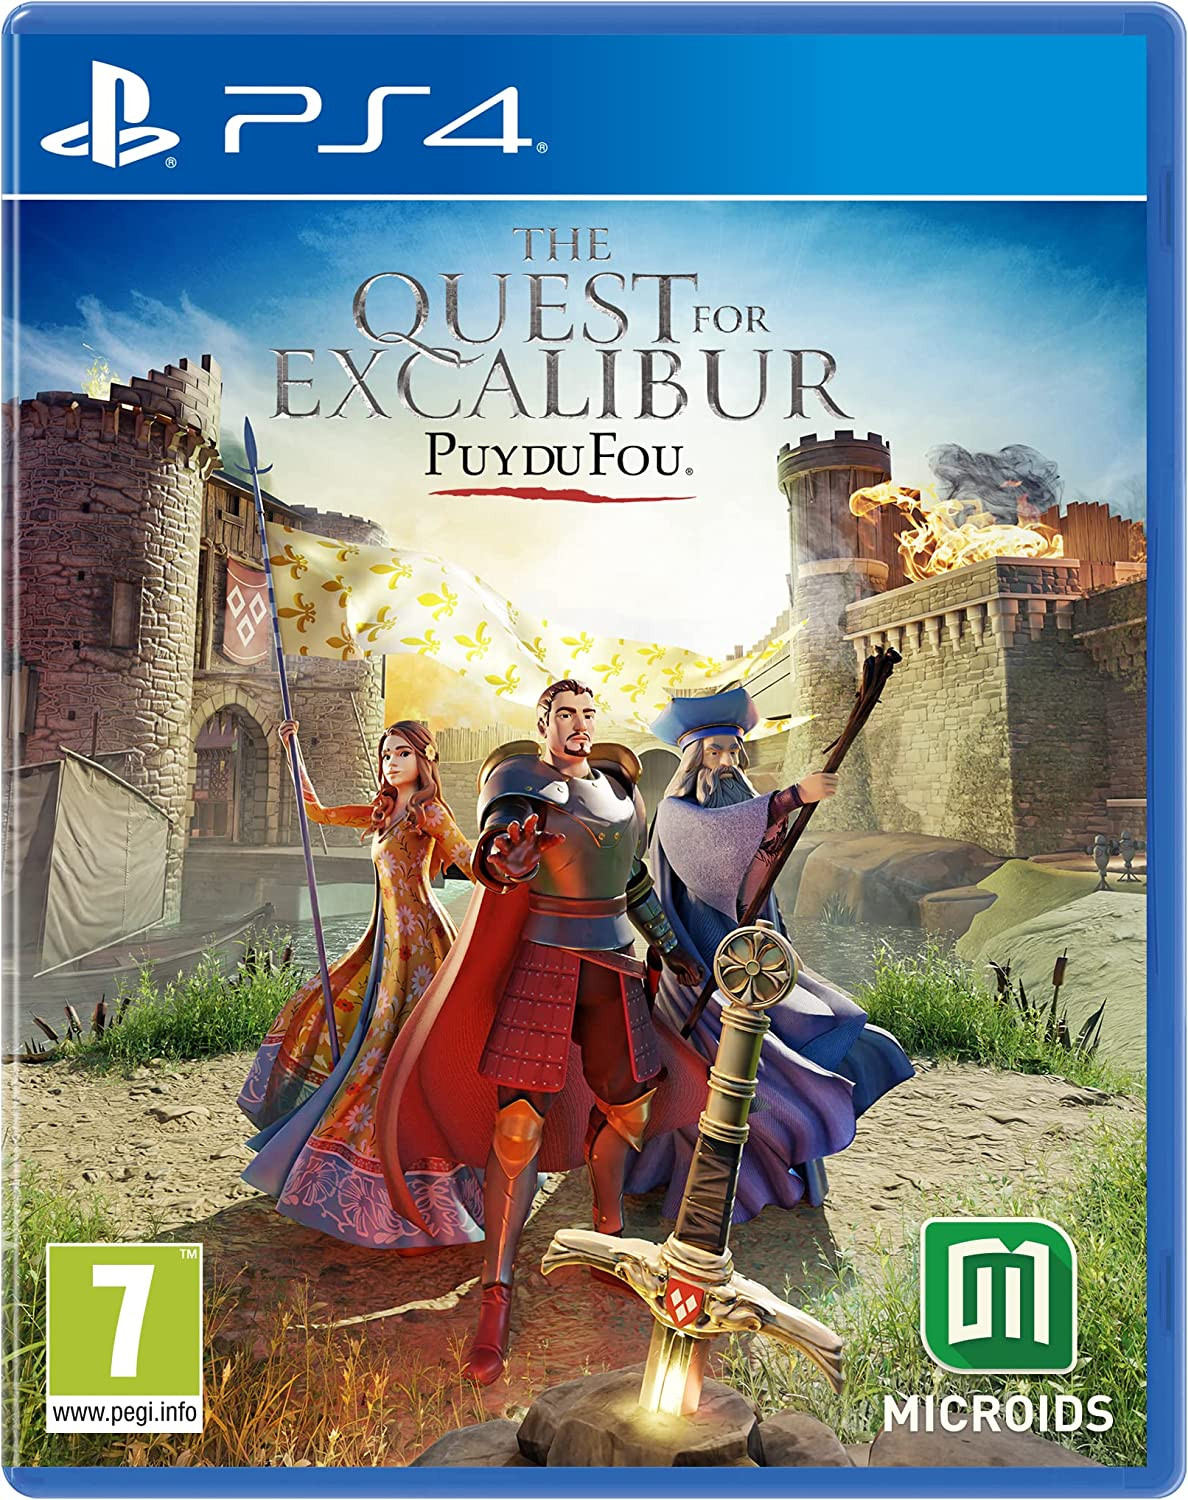 The Quest for Excalibur: Puy Du Fou (PS4), Microids